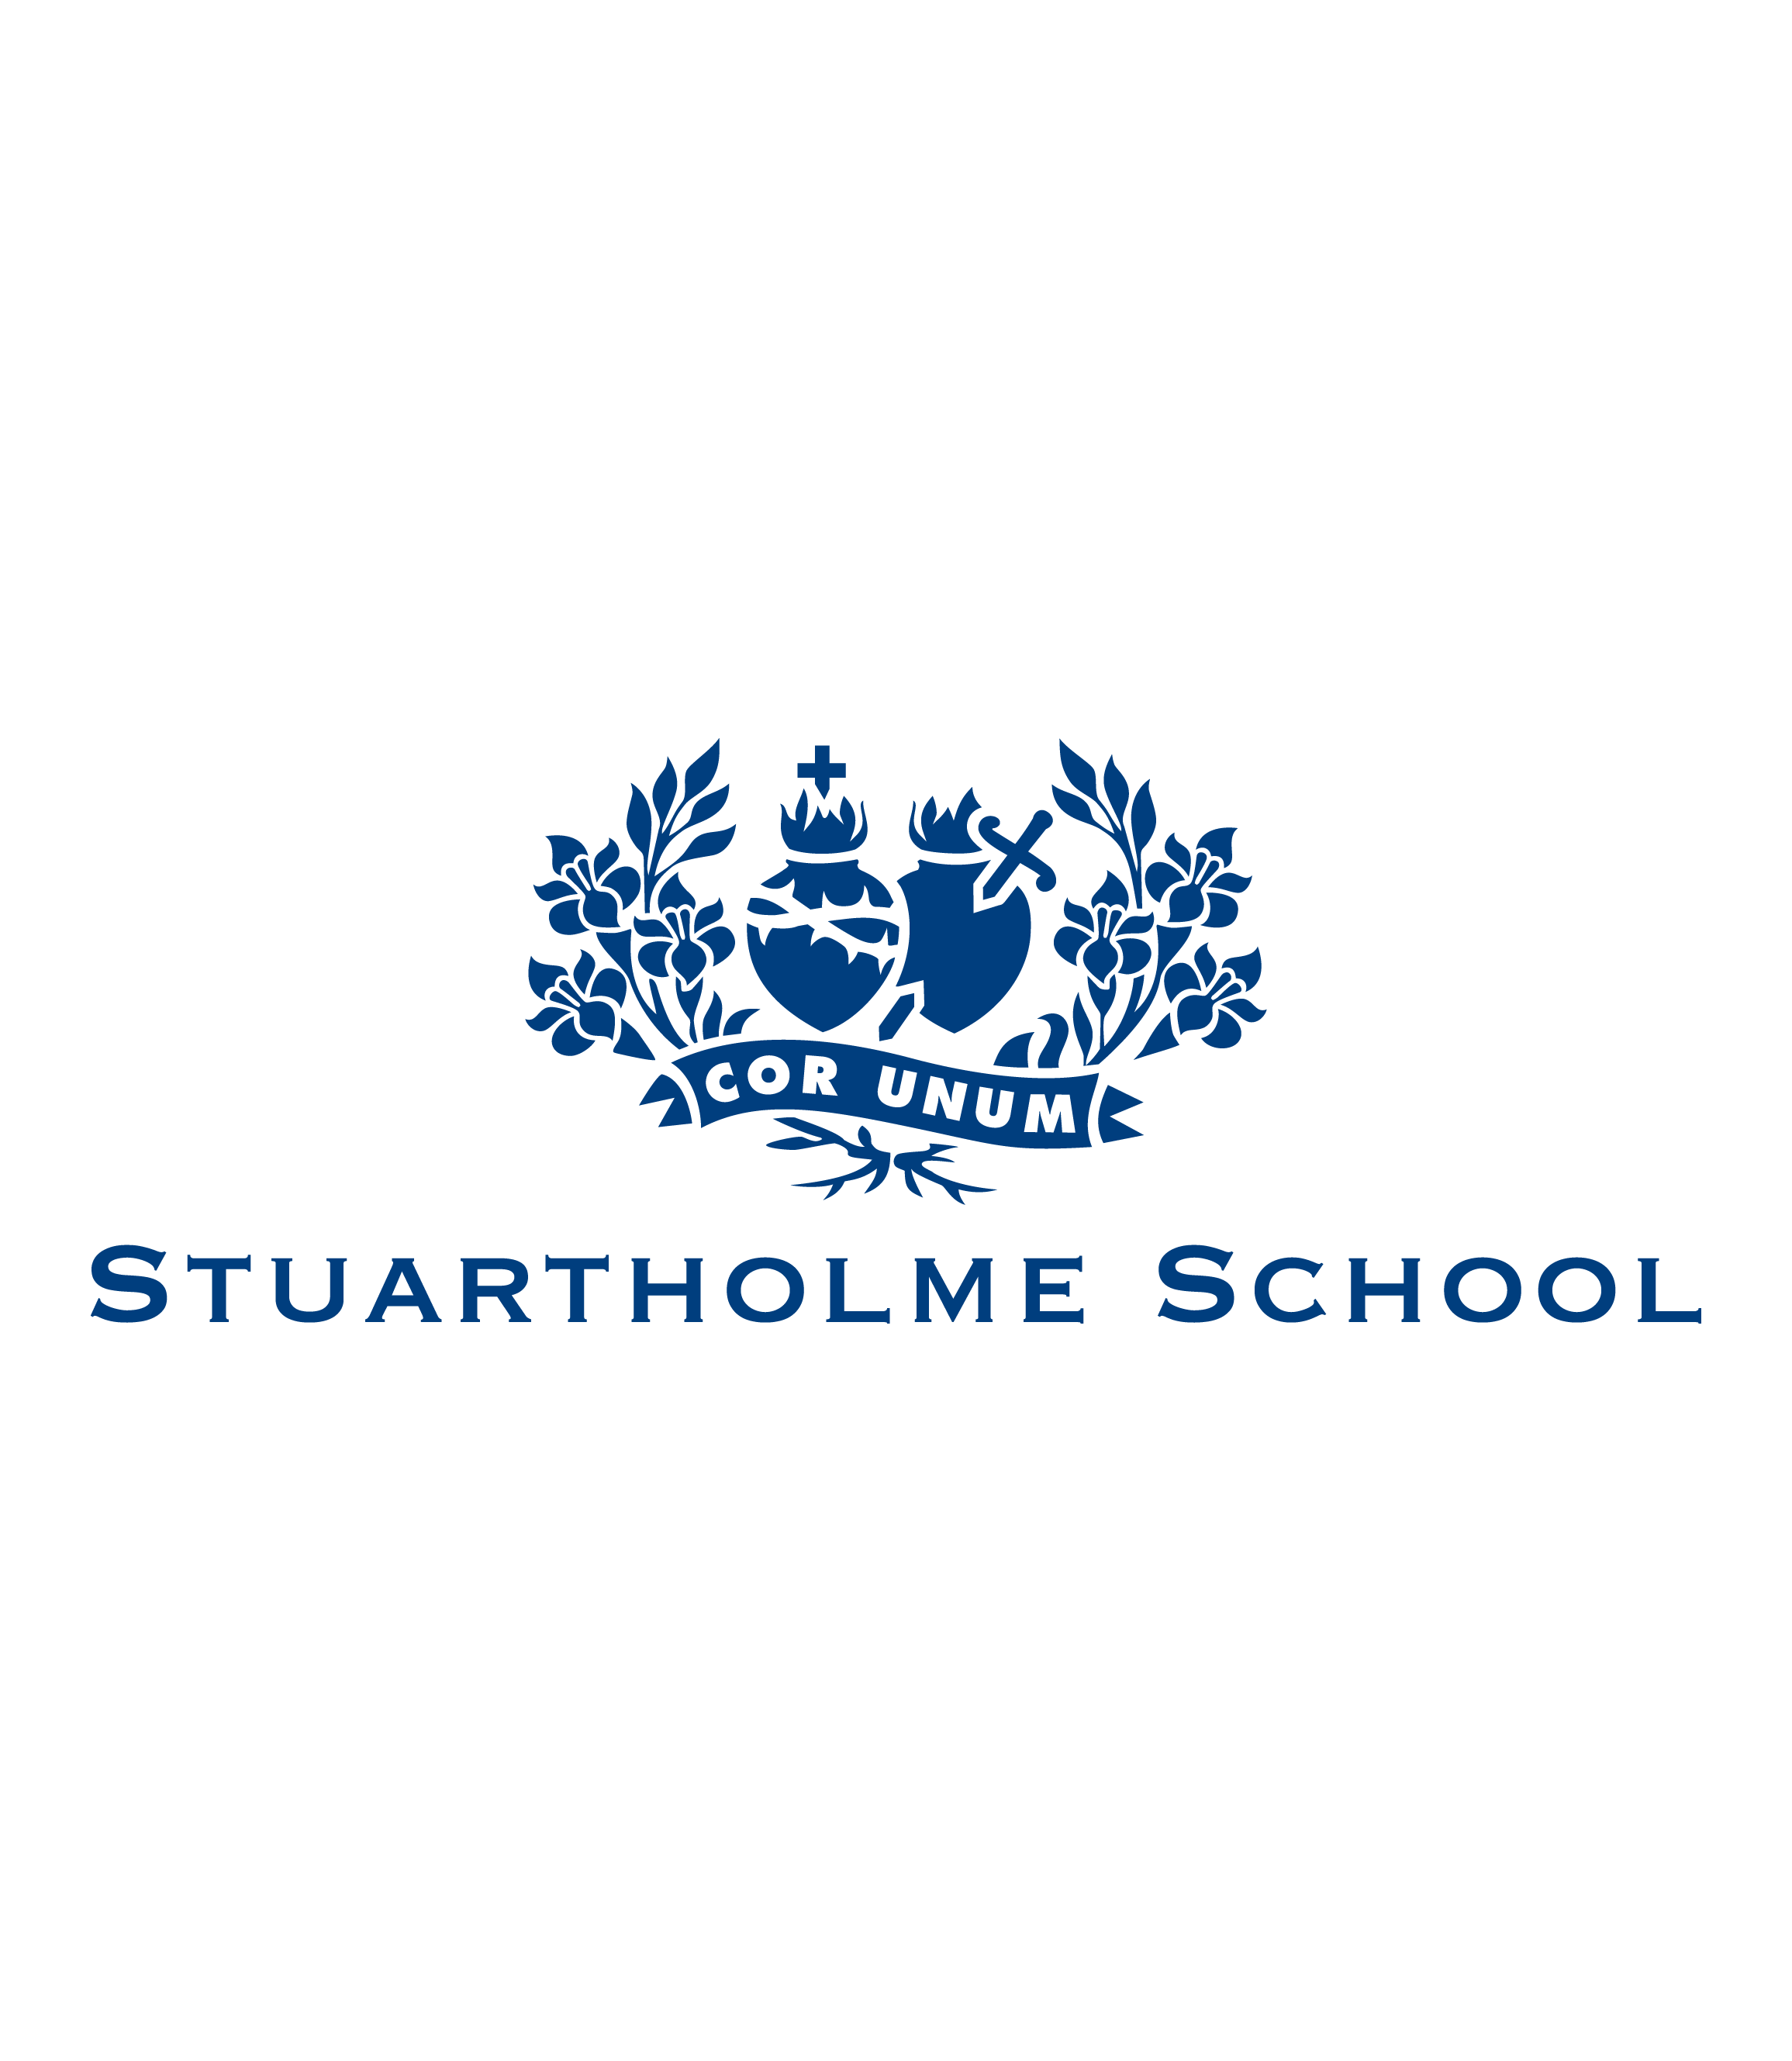 Stuartholme School, Toowong, QLD